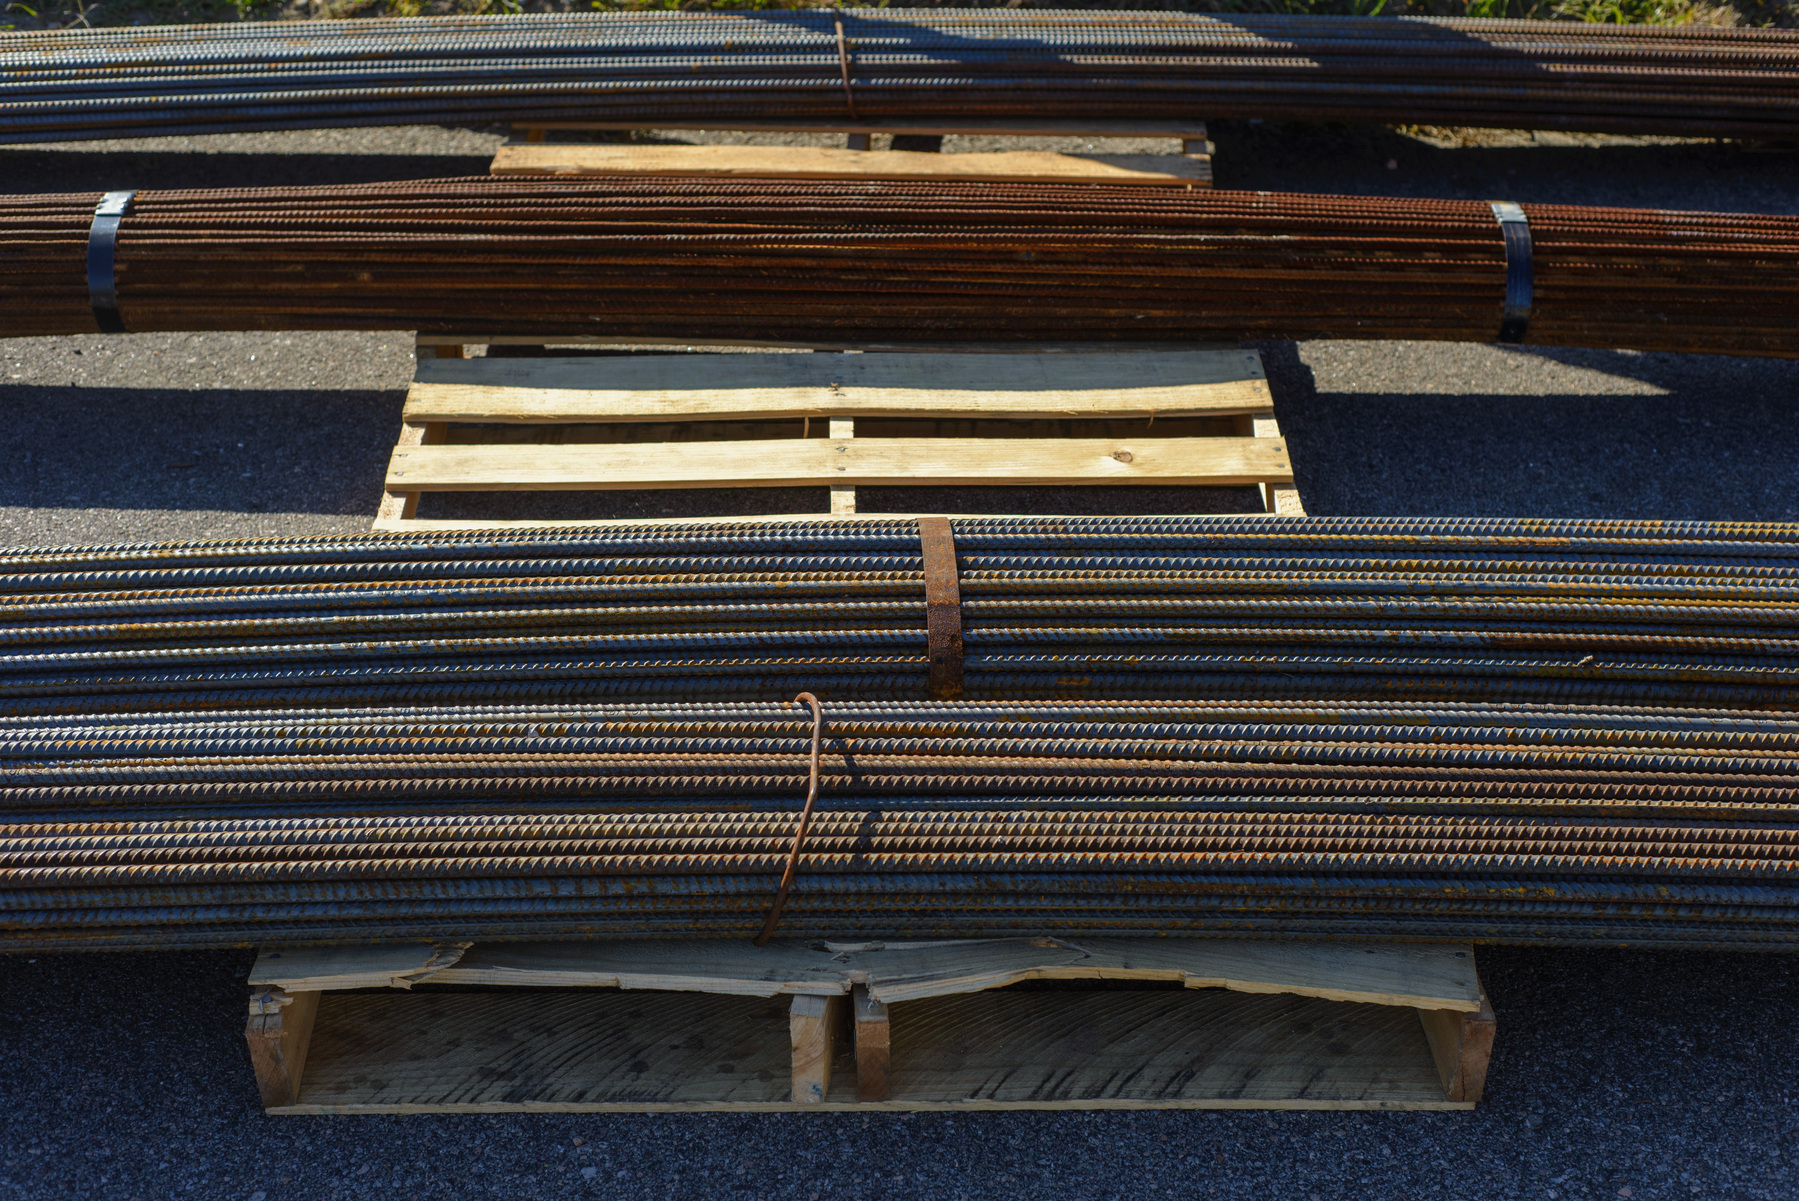 Reinforcing bars on a wooden pallet. Bars running horizontally across the frame.